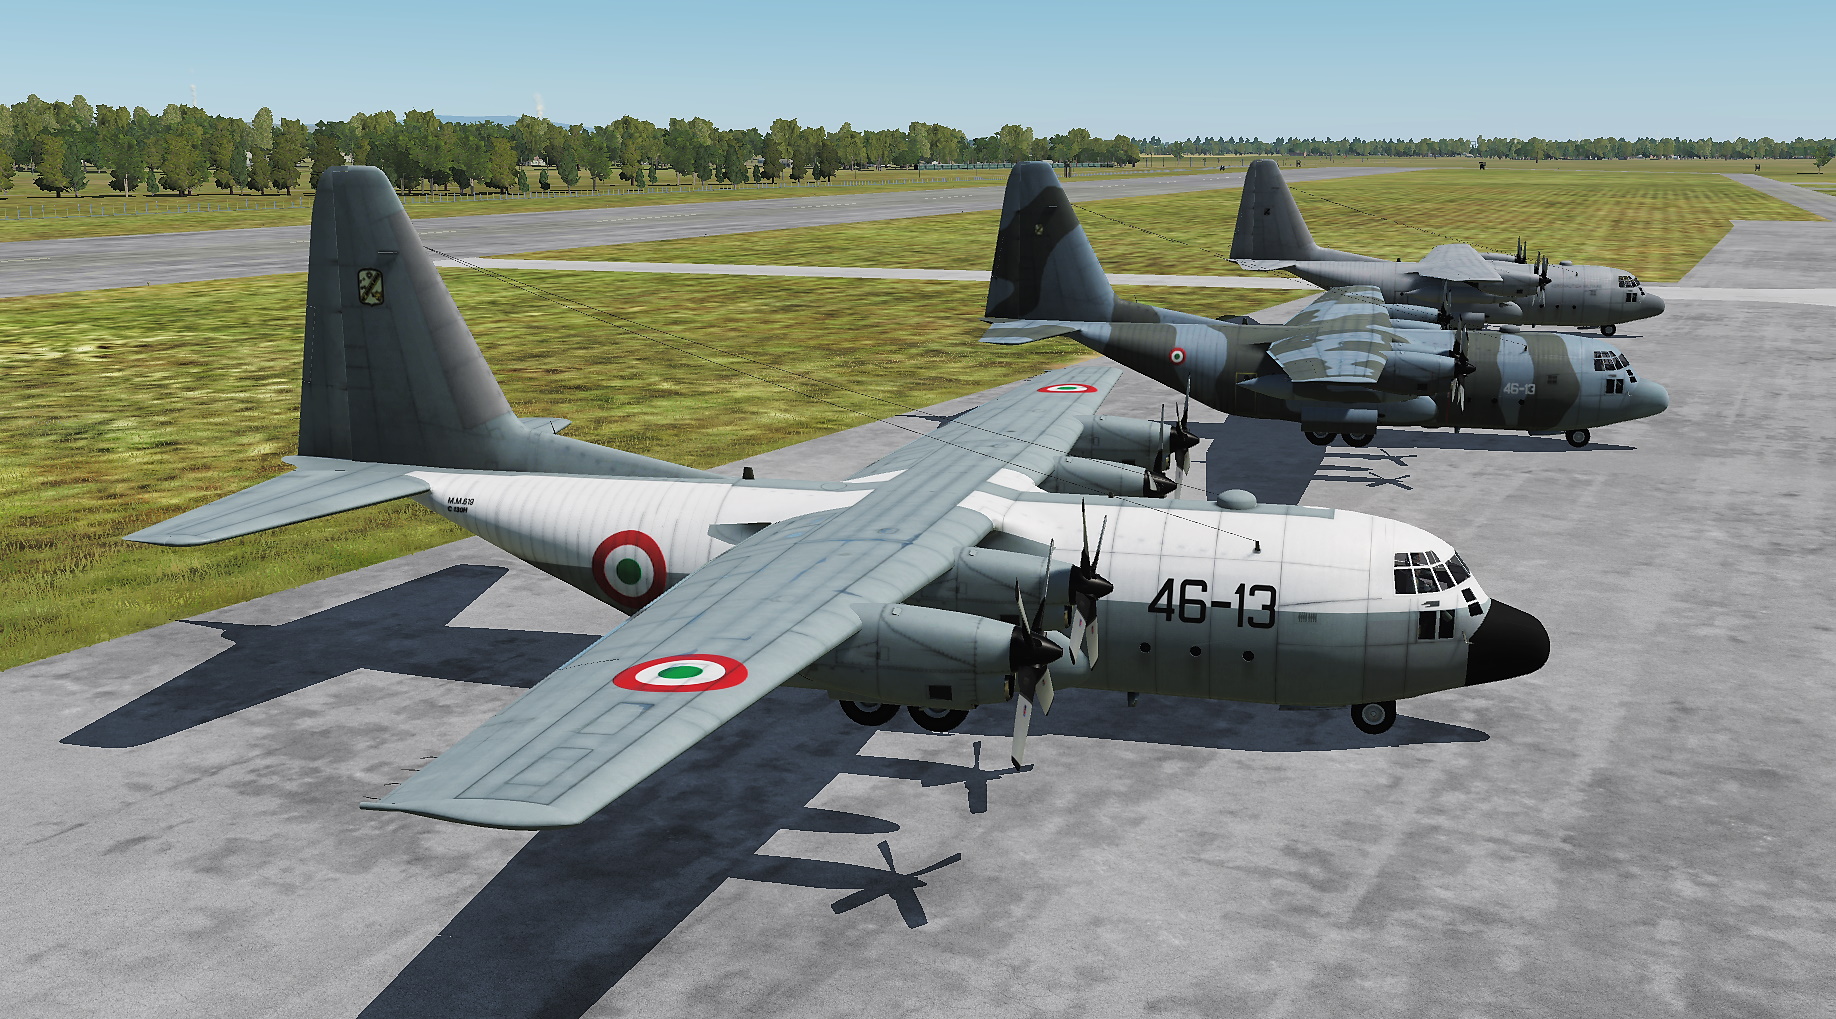 Italian Air Force C-130 skins